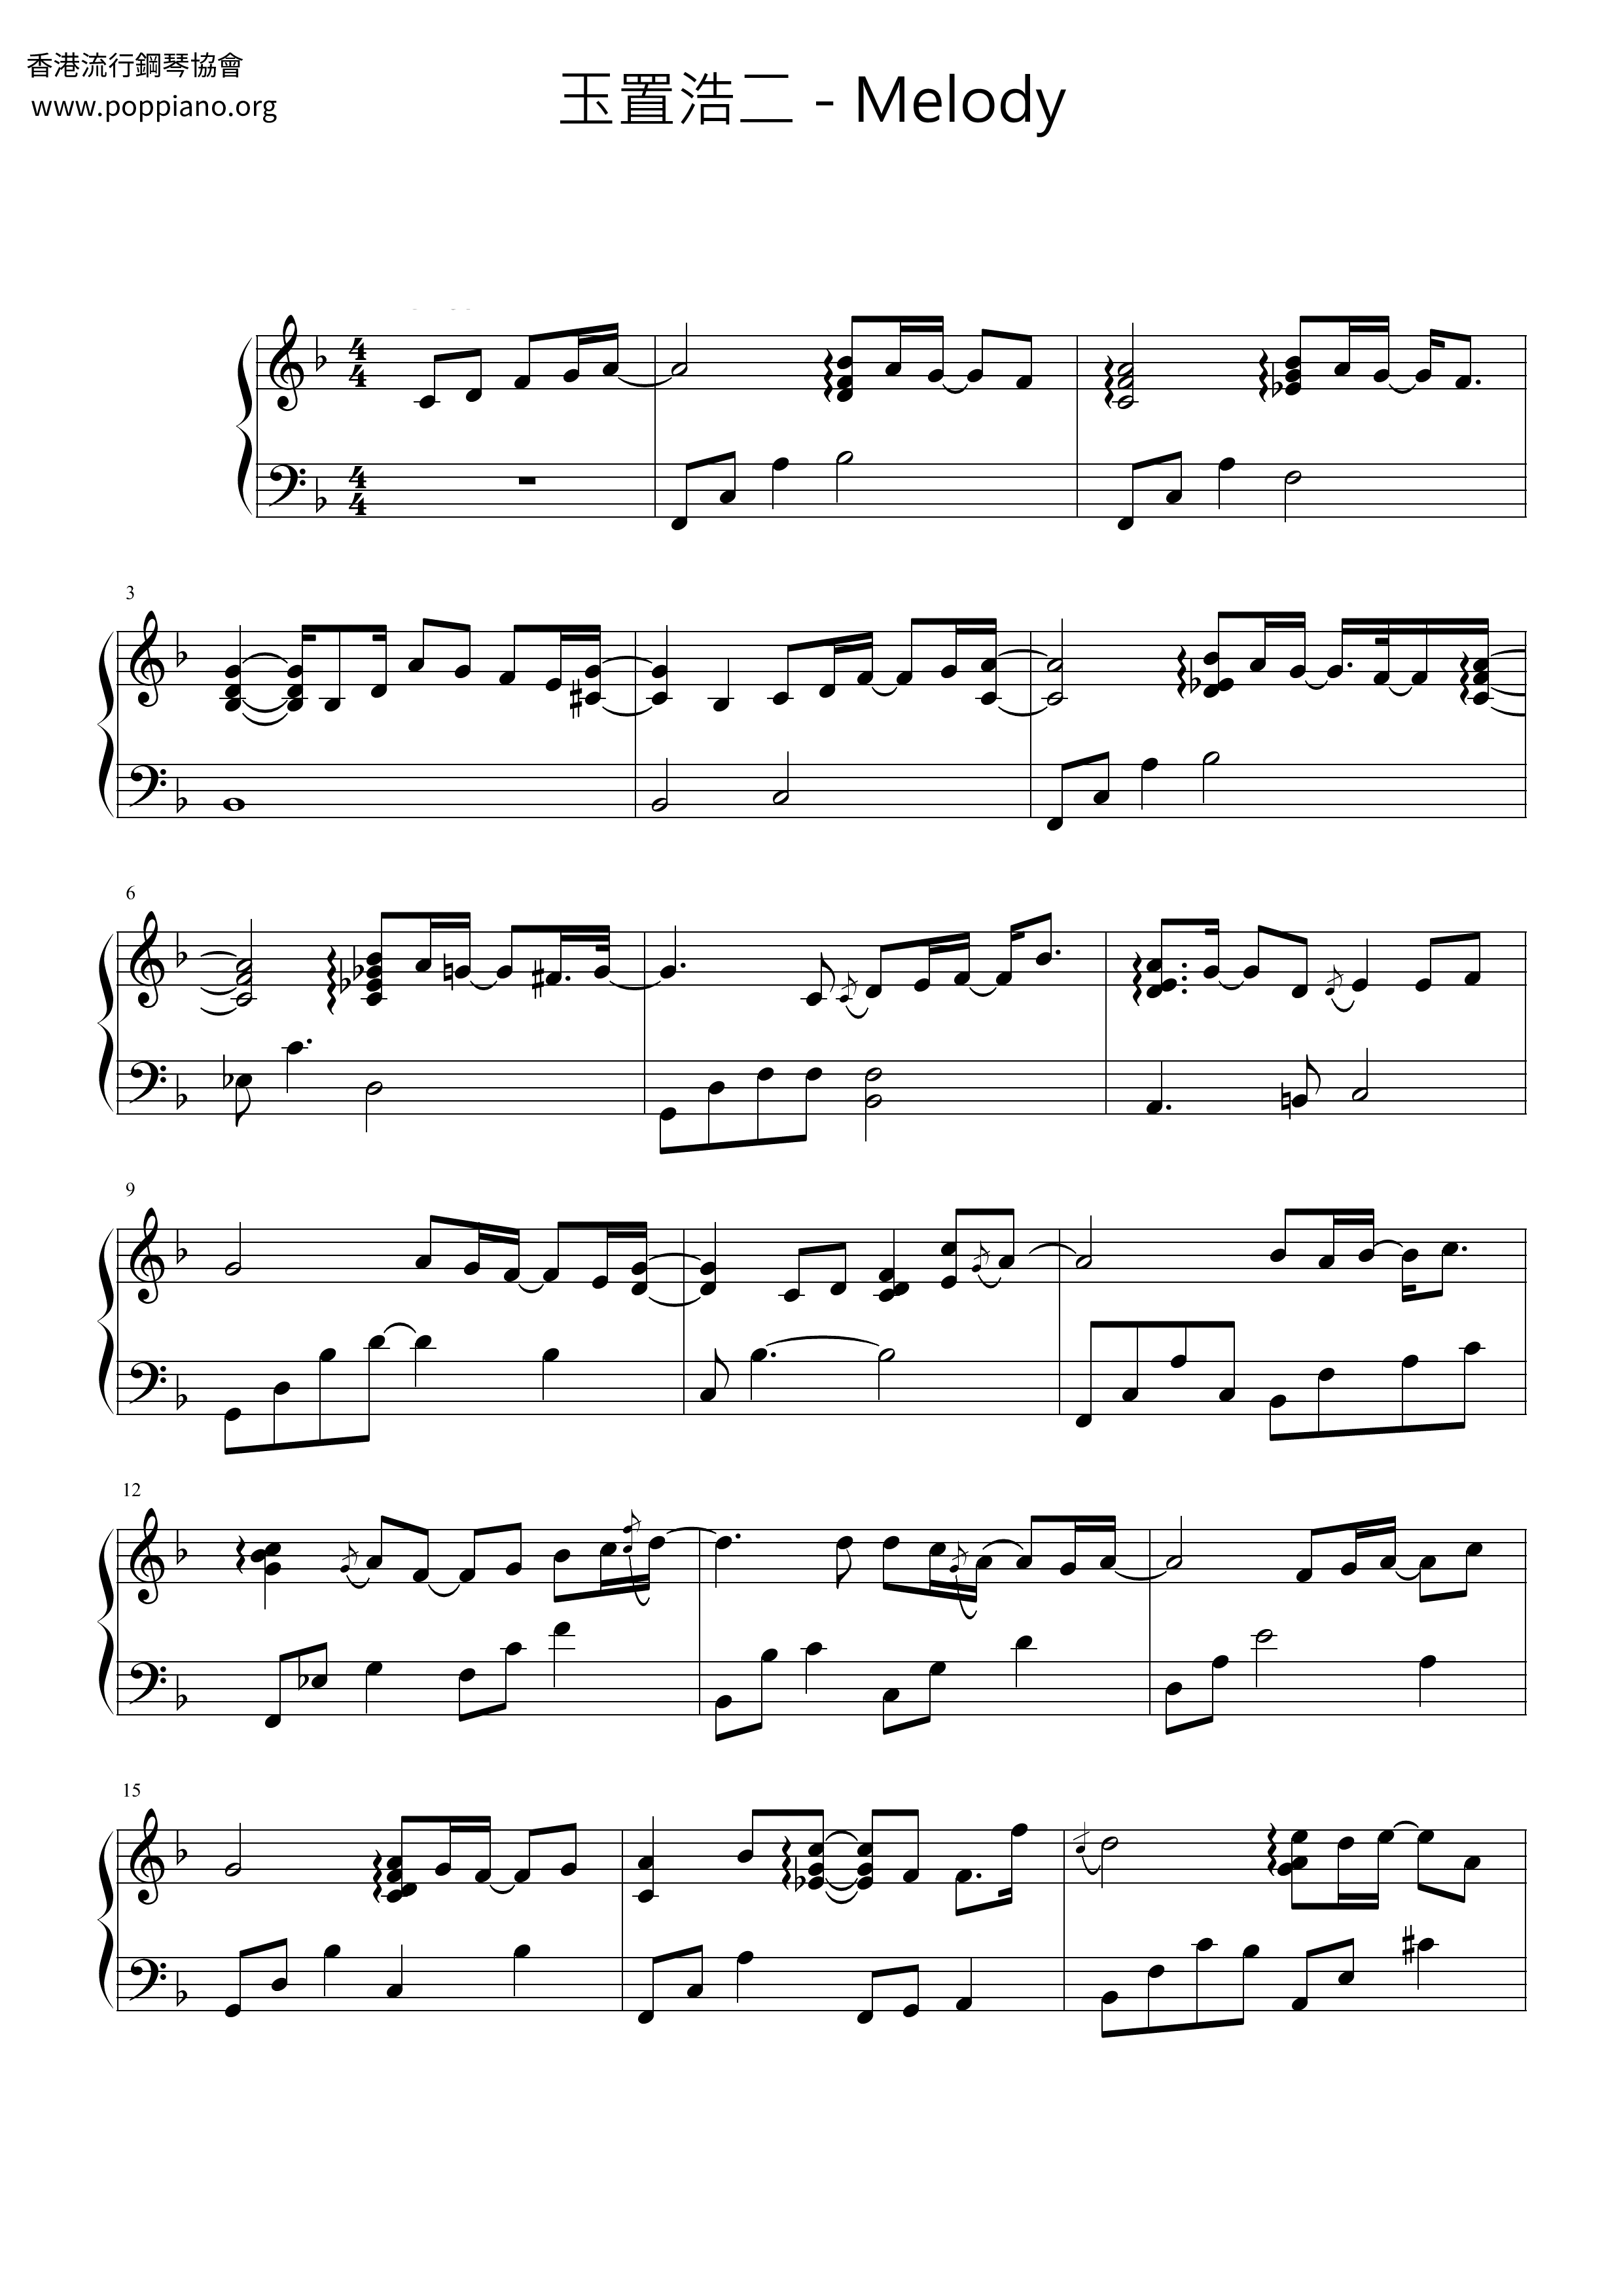 Melody Score